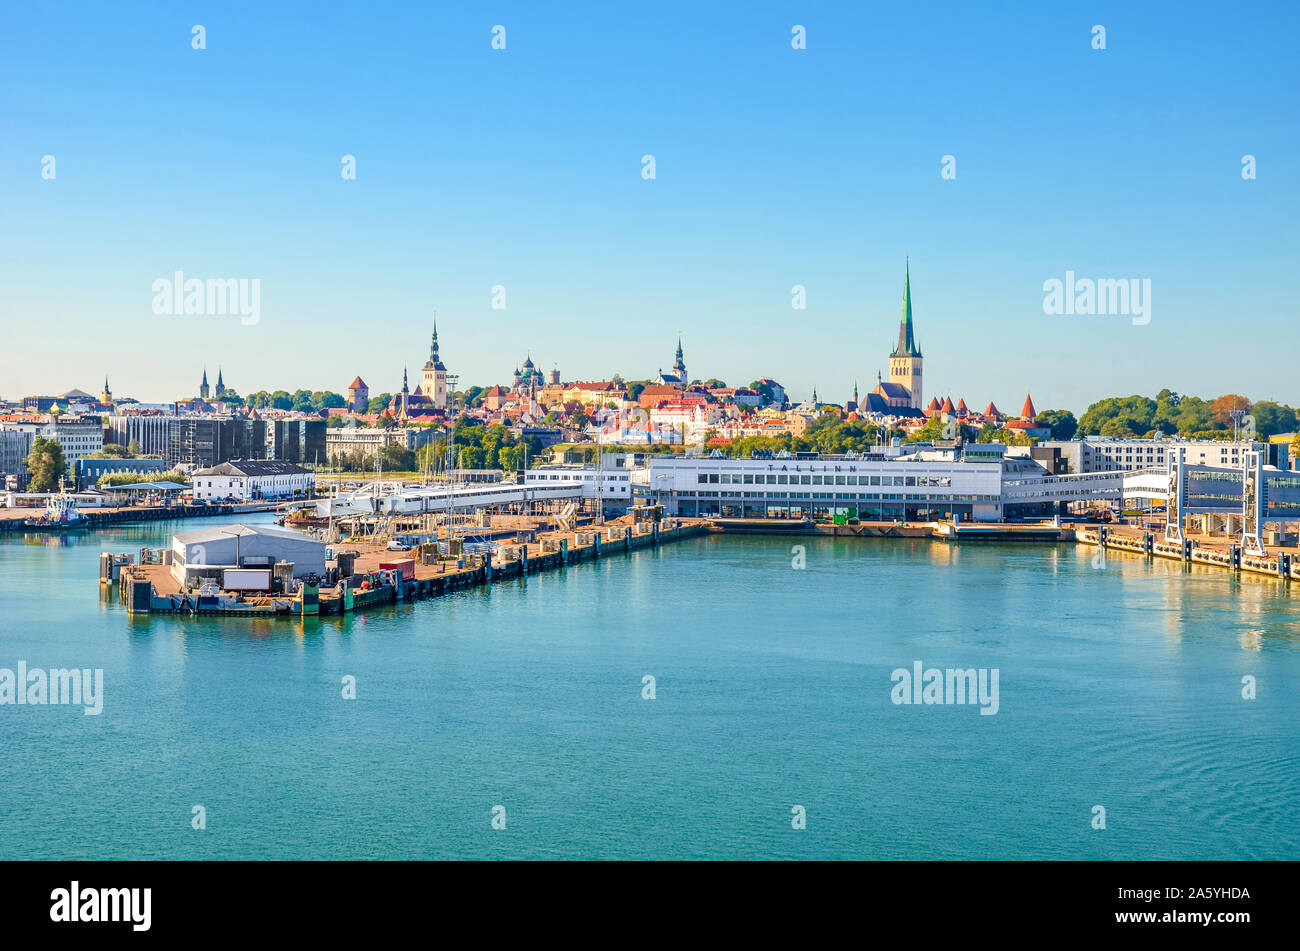 Bellissimo paesaggio di Tallinn, Estonia fotografata da crociera con porto sul Golfo di Finlandia. Capitale estone, stati baltici. Cruise Terminal, centro storico. Foto Stock